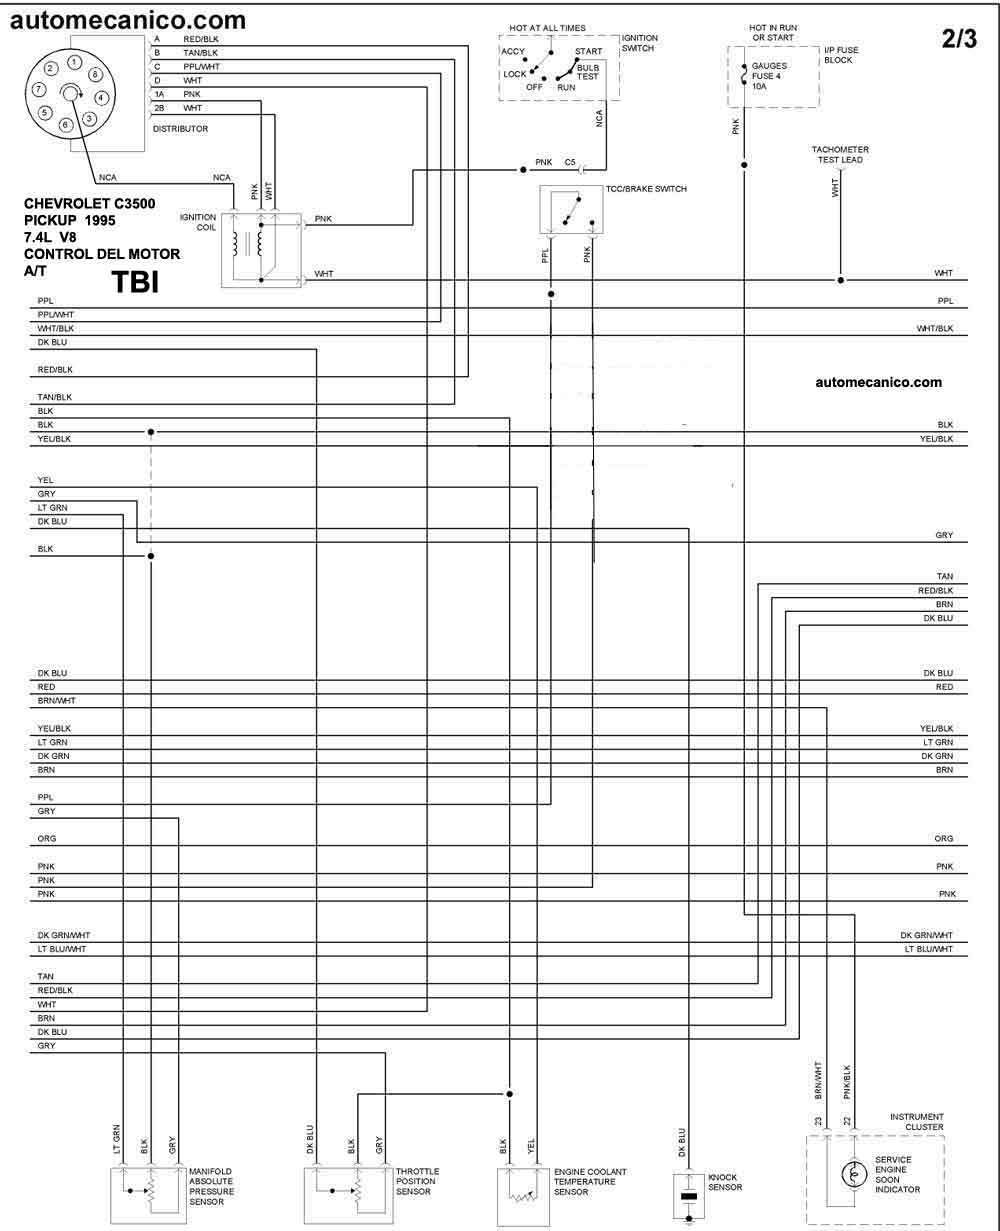 CHEVROLET - Diagramas control del motor 1995 - Graphics - Esquemas |  Vehiculos - Motores - Componentes | Mecanica automotriz